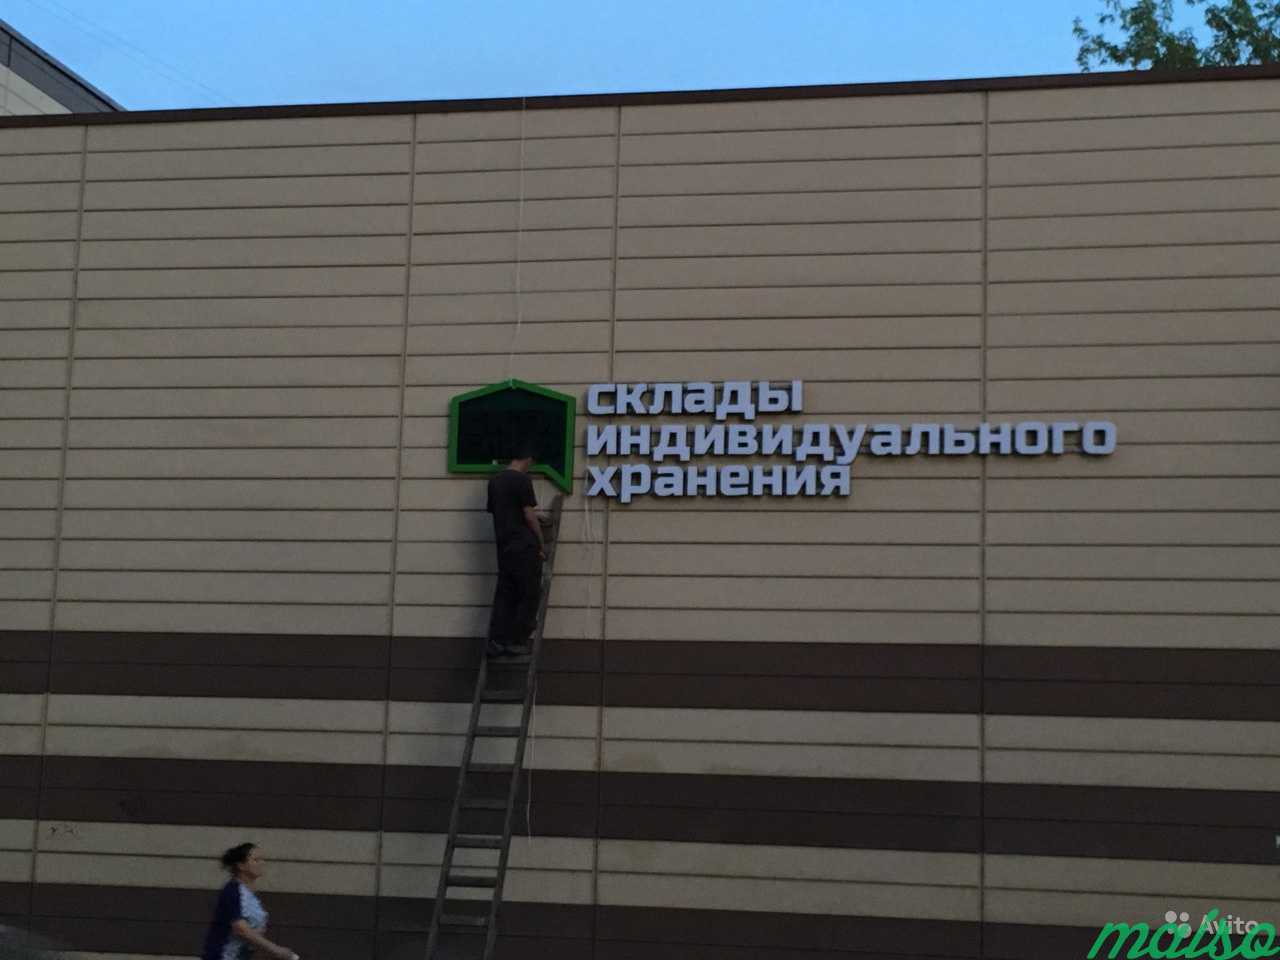 Монтаж рекламных конструкций любой сложности в Москве. Фото 4